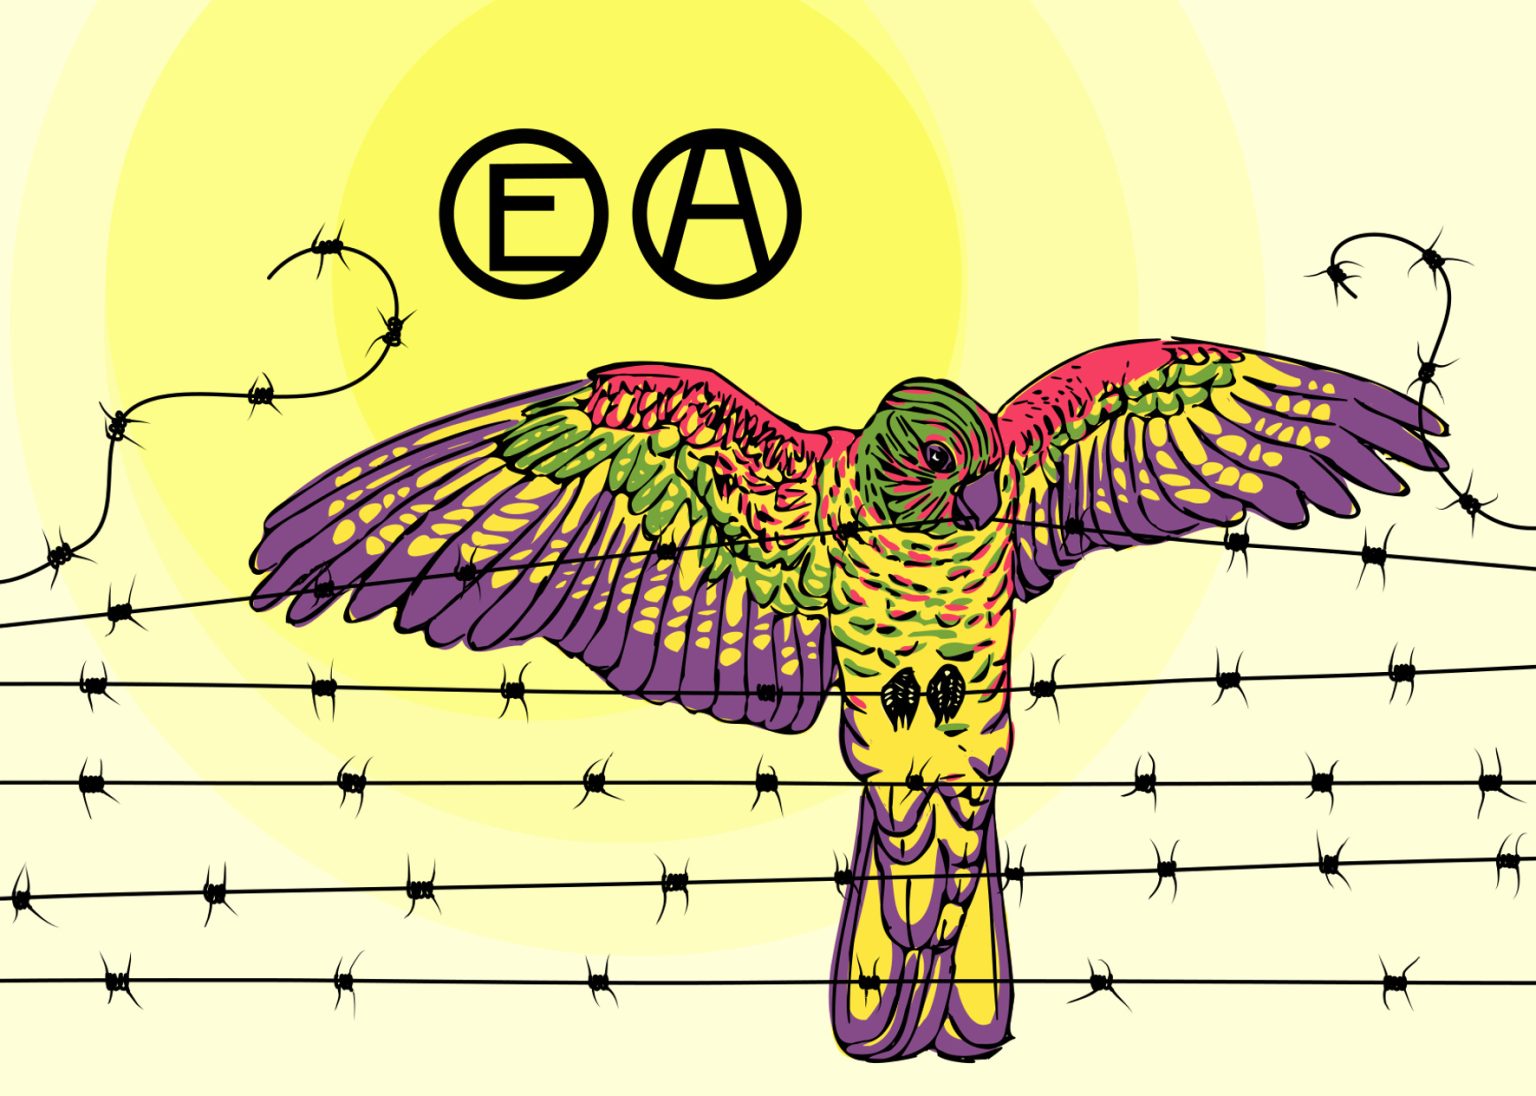 Bunter Vogel, der den Stacheldraht in zwei reißt. Dazu ein E und ein A im Kreis vor einem gelben Hintergrund.